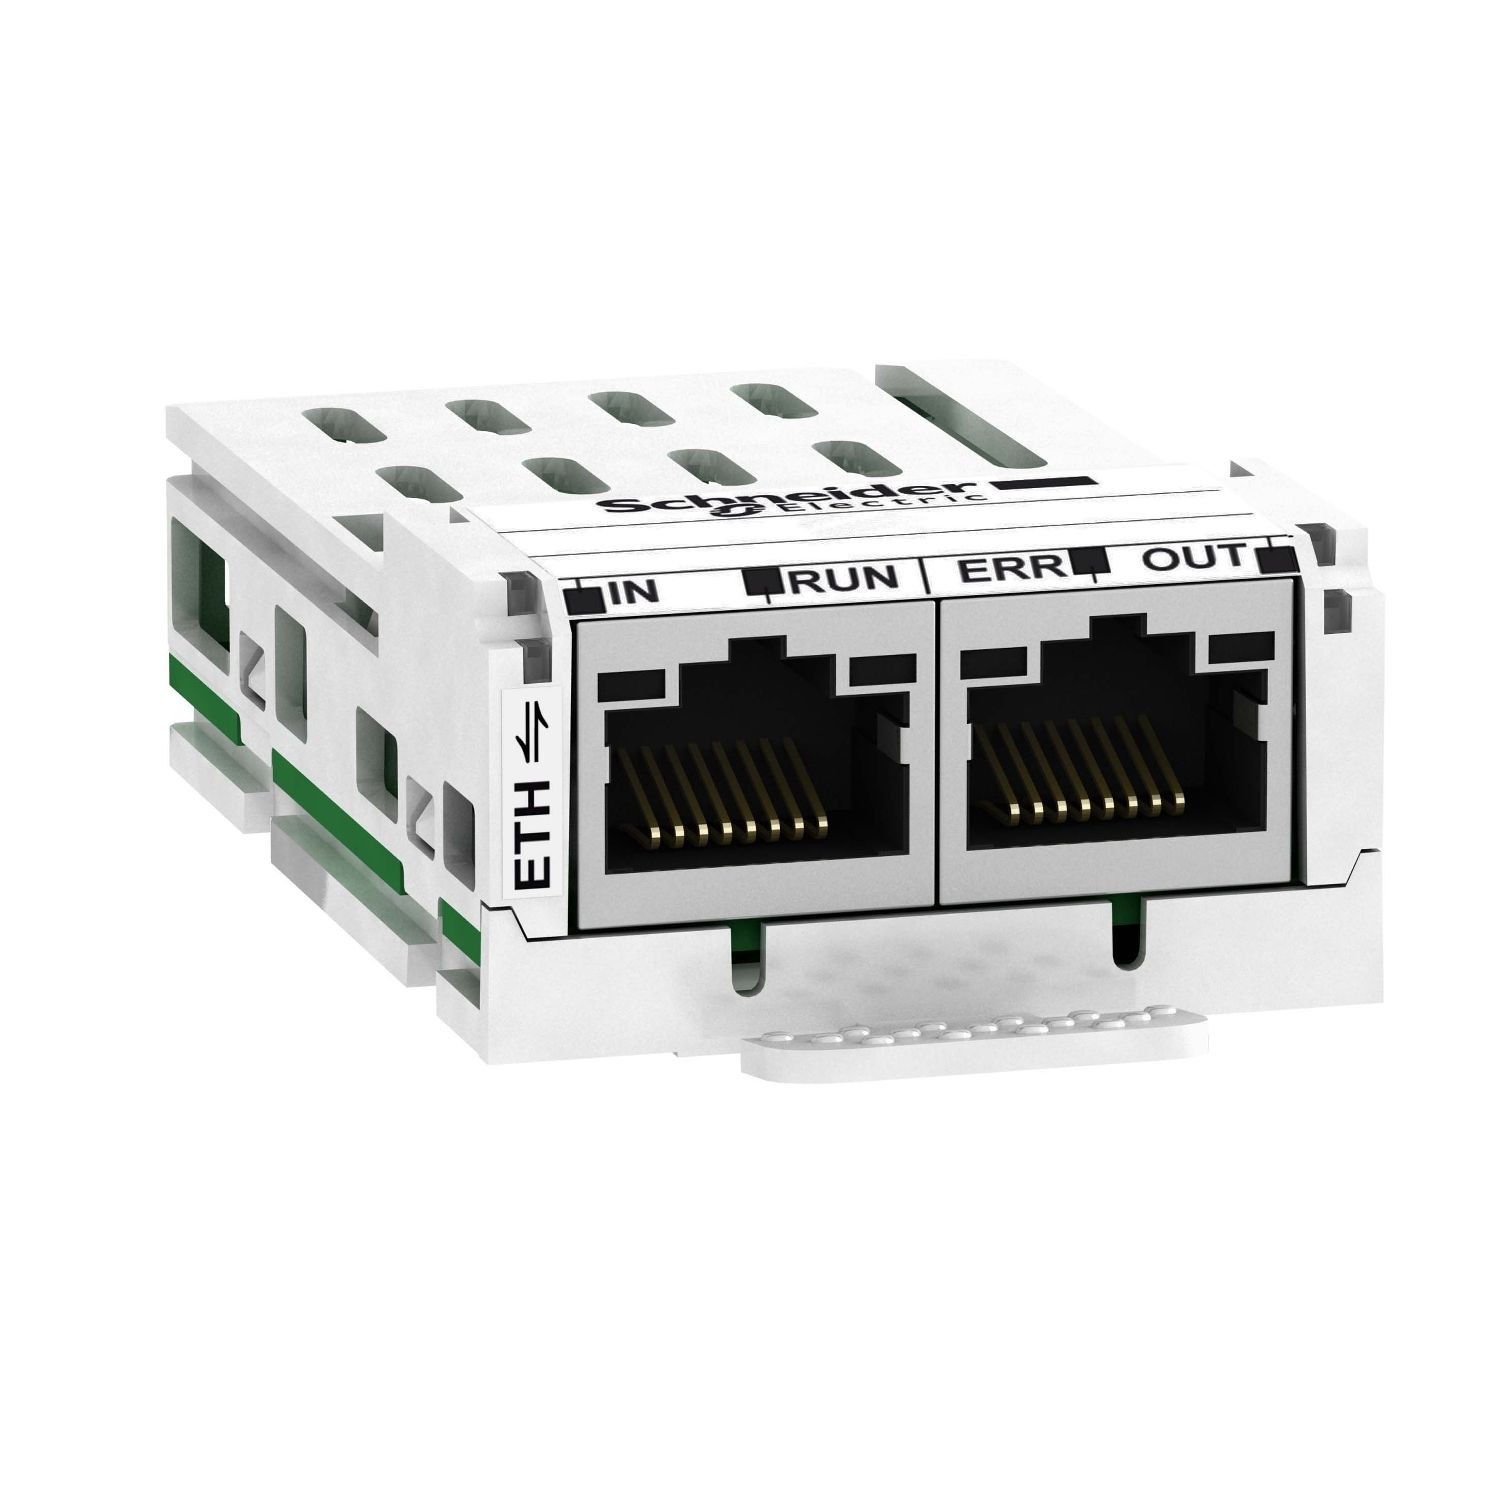 VW3A3601 communication module Ethercat, Altivar, 100Mbps, 2 x RJ45 connectors